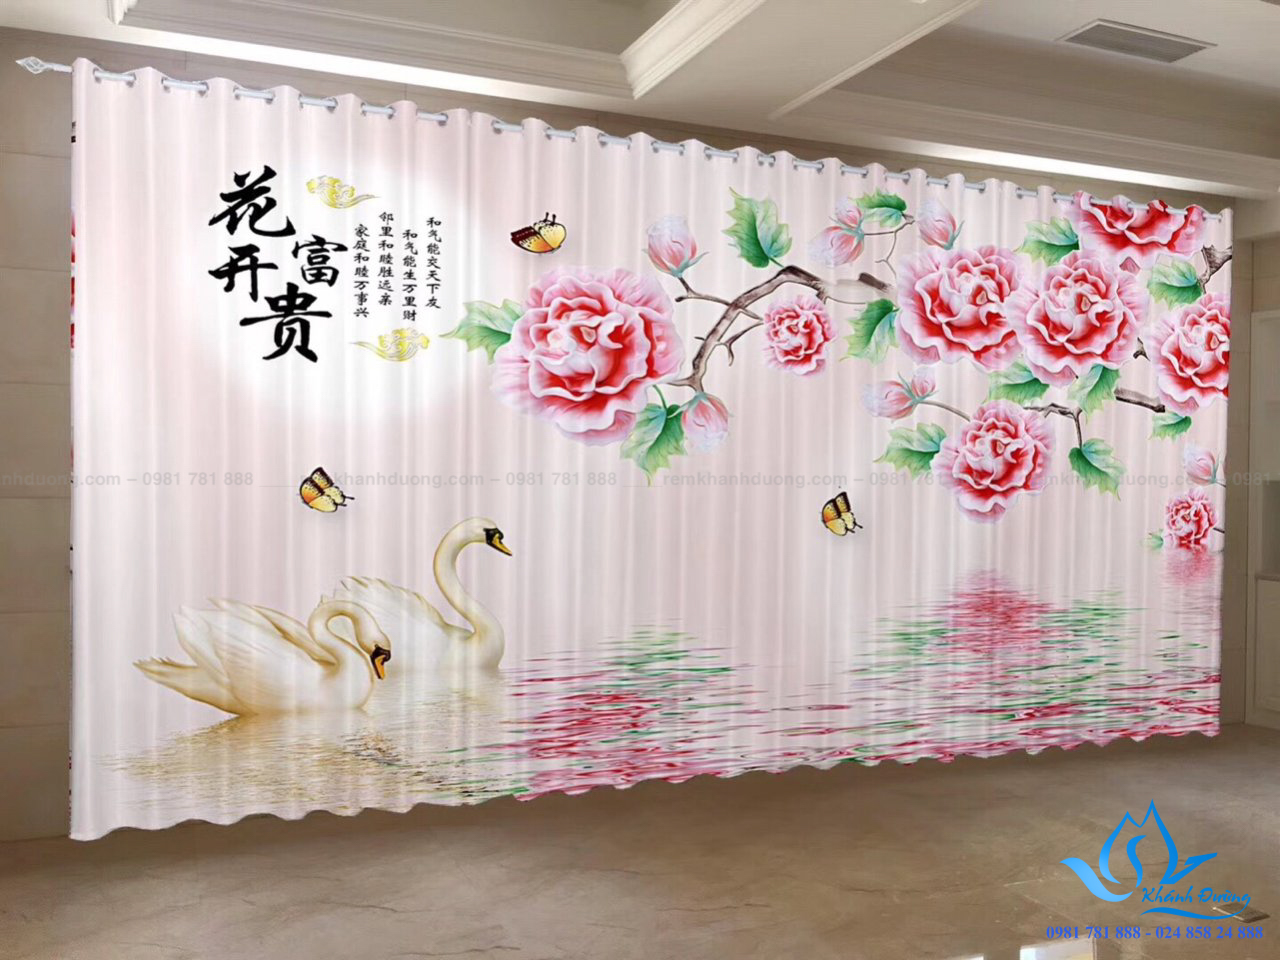 Rèm cửa vải in tranh 3D phòng ngủ bé gái tại Nguyễn Xí, Hà Nội RT17